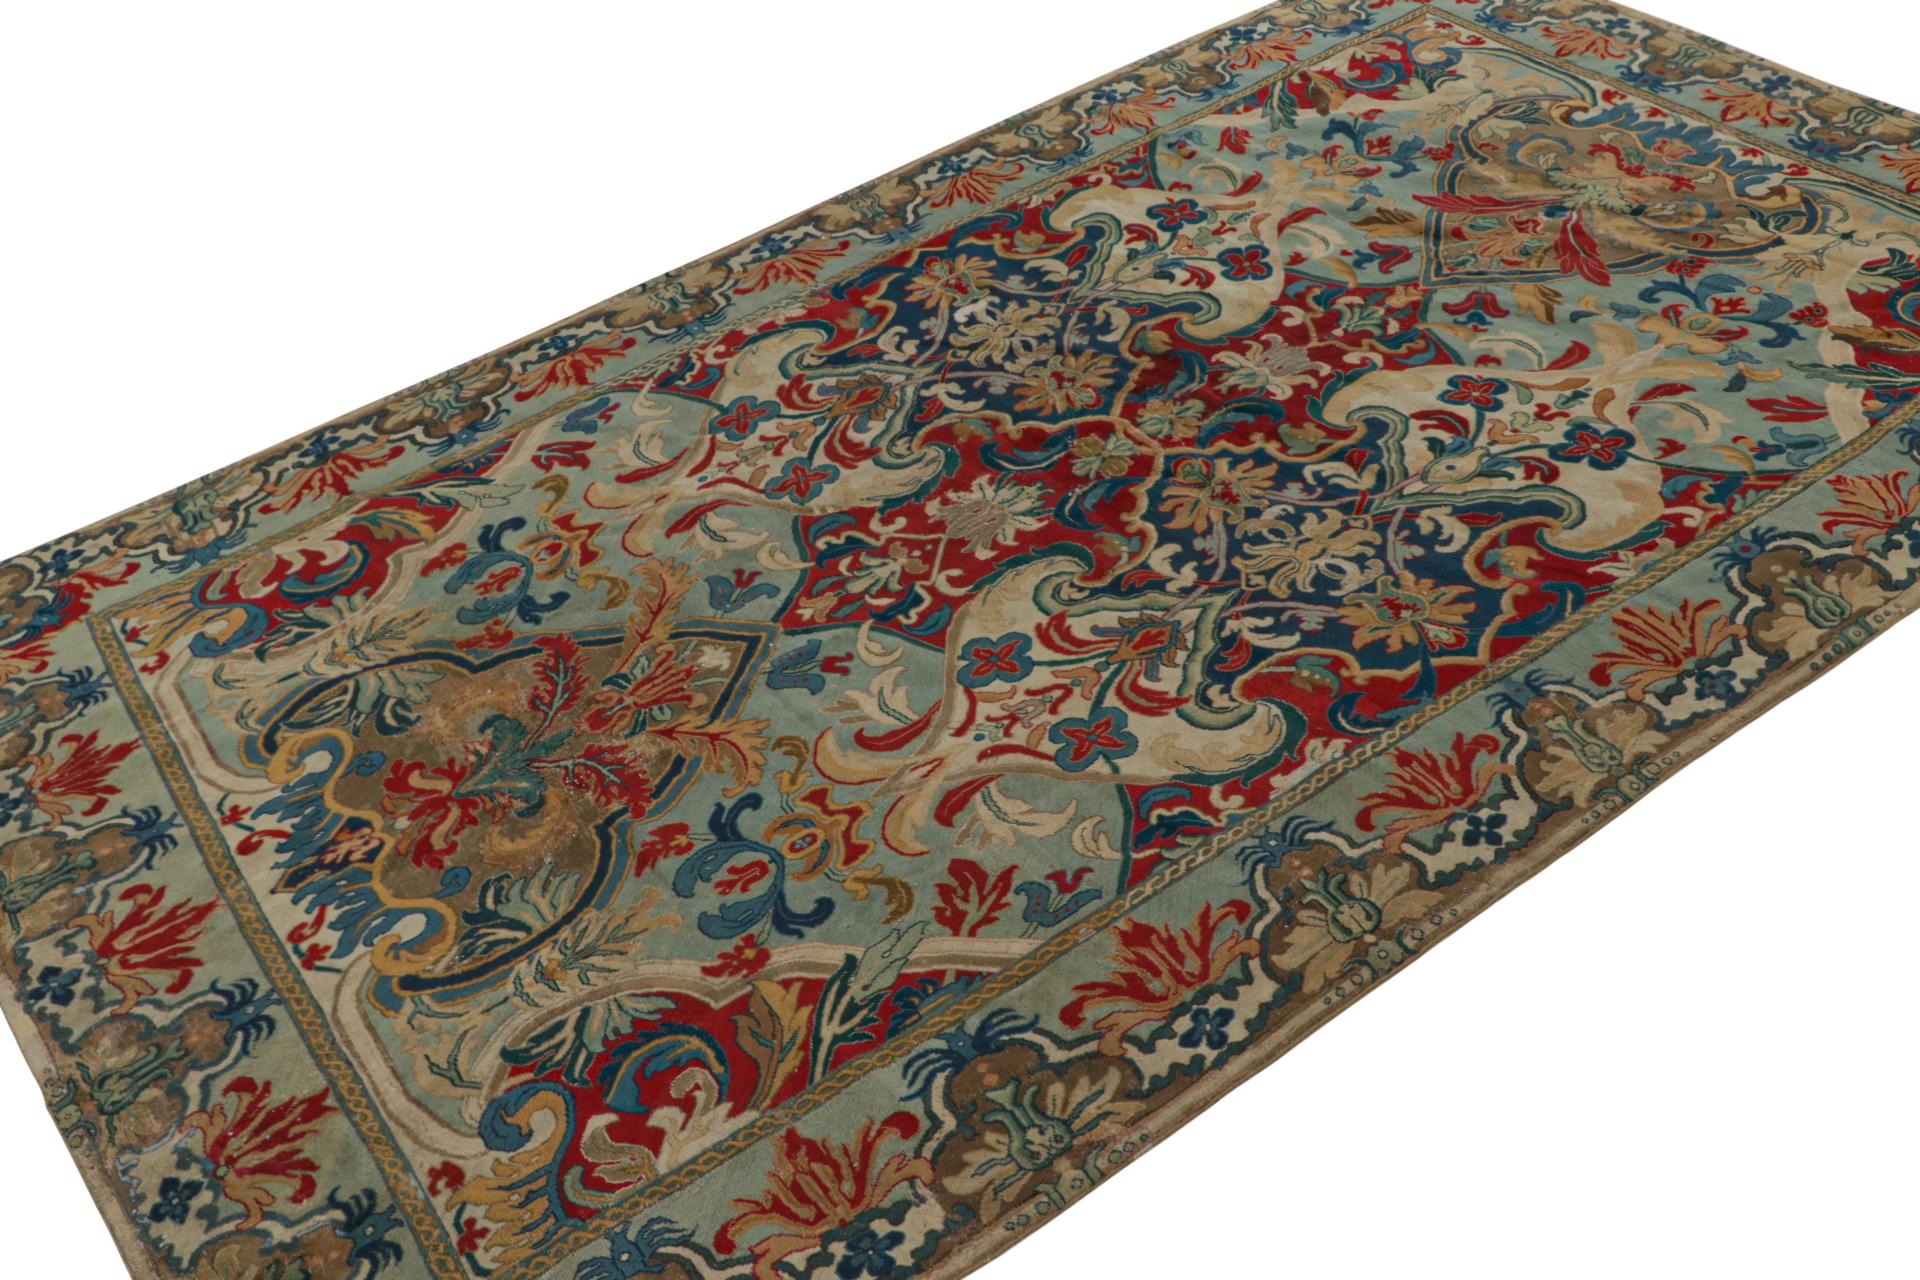 Fabriqué à la main en laine vers 1850-1860, ce tapis à l'aiguille français ancien de 5x9 est un ajout particulièrement rare à notre collection de tapis européens. Son design présente des médaillons et des fleurs complexes dans un motif all over avec